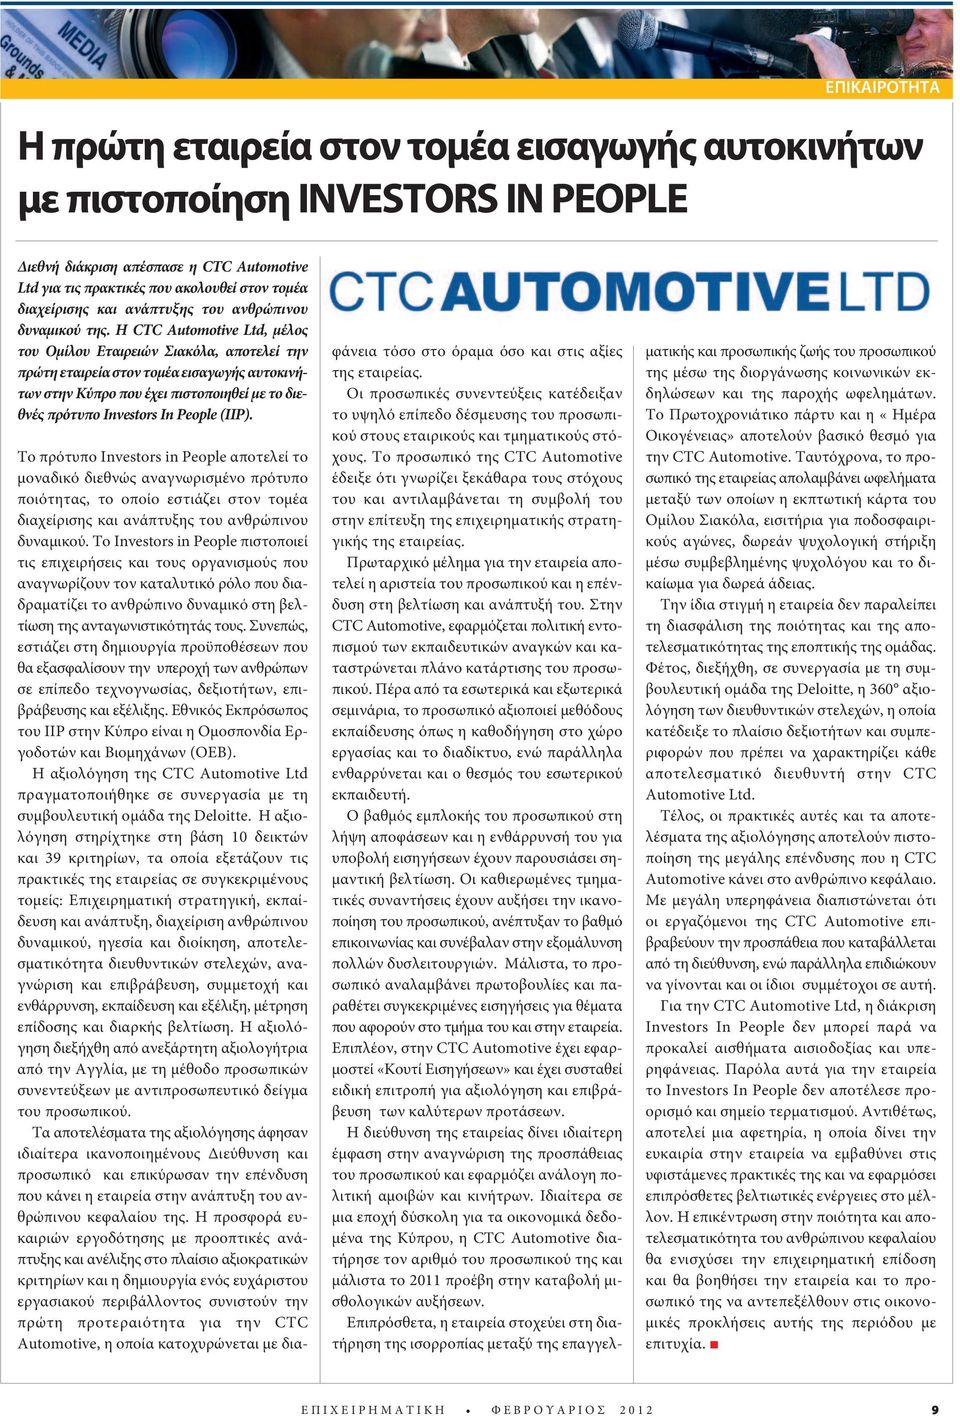 Η CTC Automotive Ltd, μέλος του Ομίλου Εταιρειών Σιακόλα, αποτελεί την πρώτη εταιρεία στον τομέα εισαγωγής αυτοκινήτων στην Κύπρο που έχει πιστοποιηθεί με το διεθνές πρότυπο Investors In People (IIP).